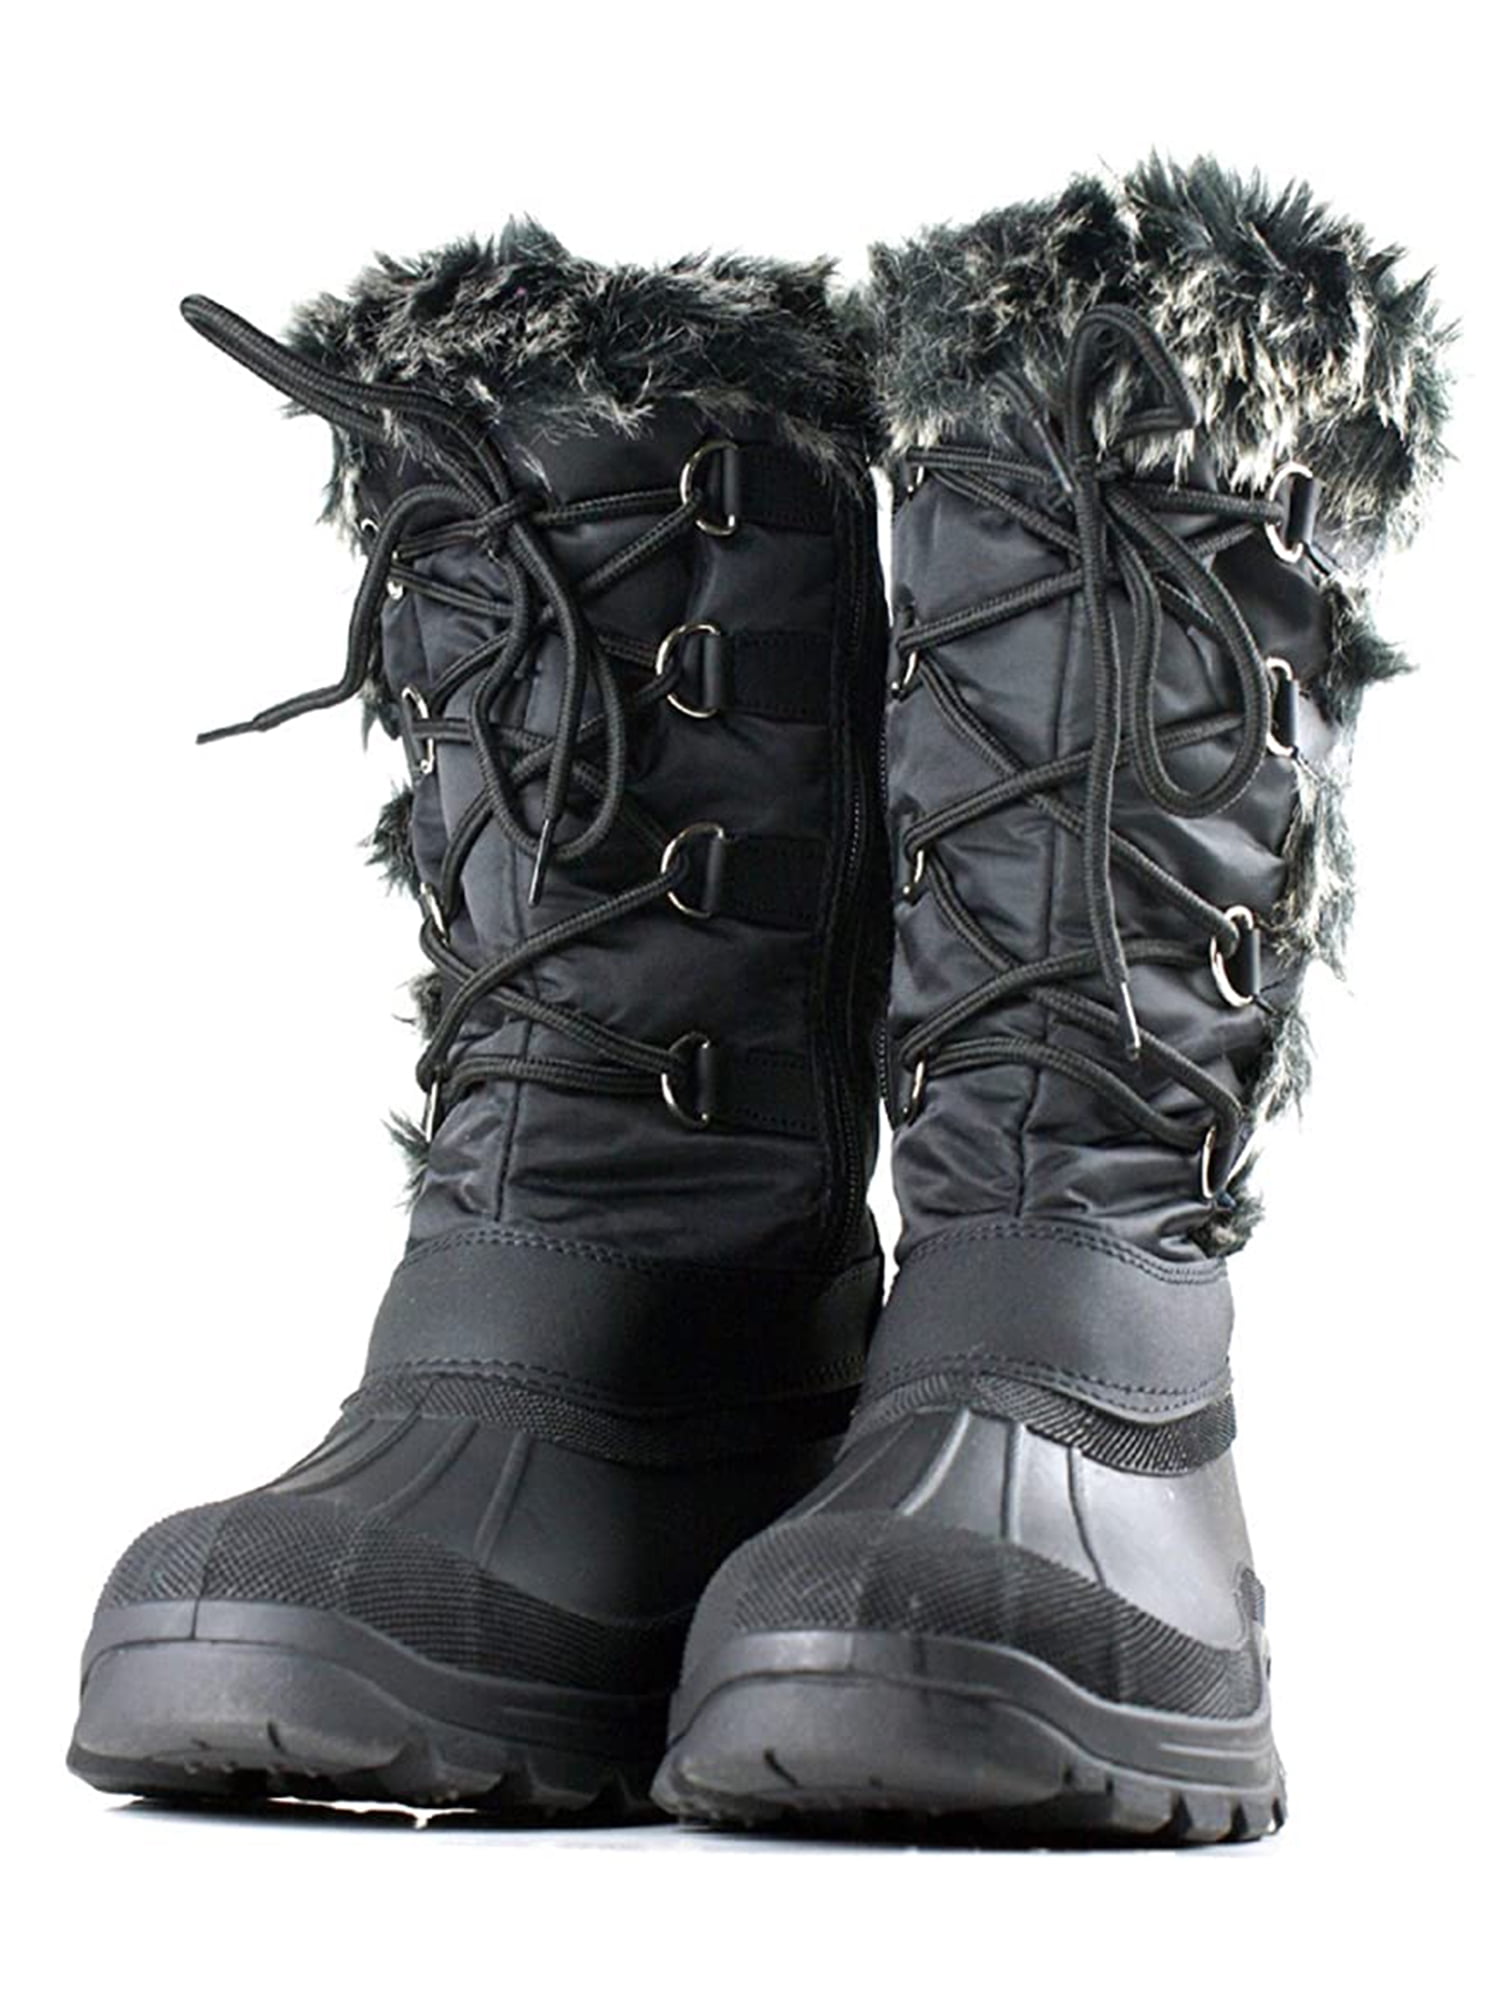 Venta > botas para la nieve walmart > en stock